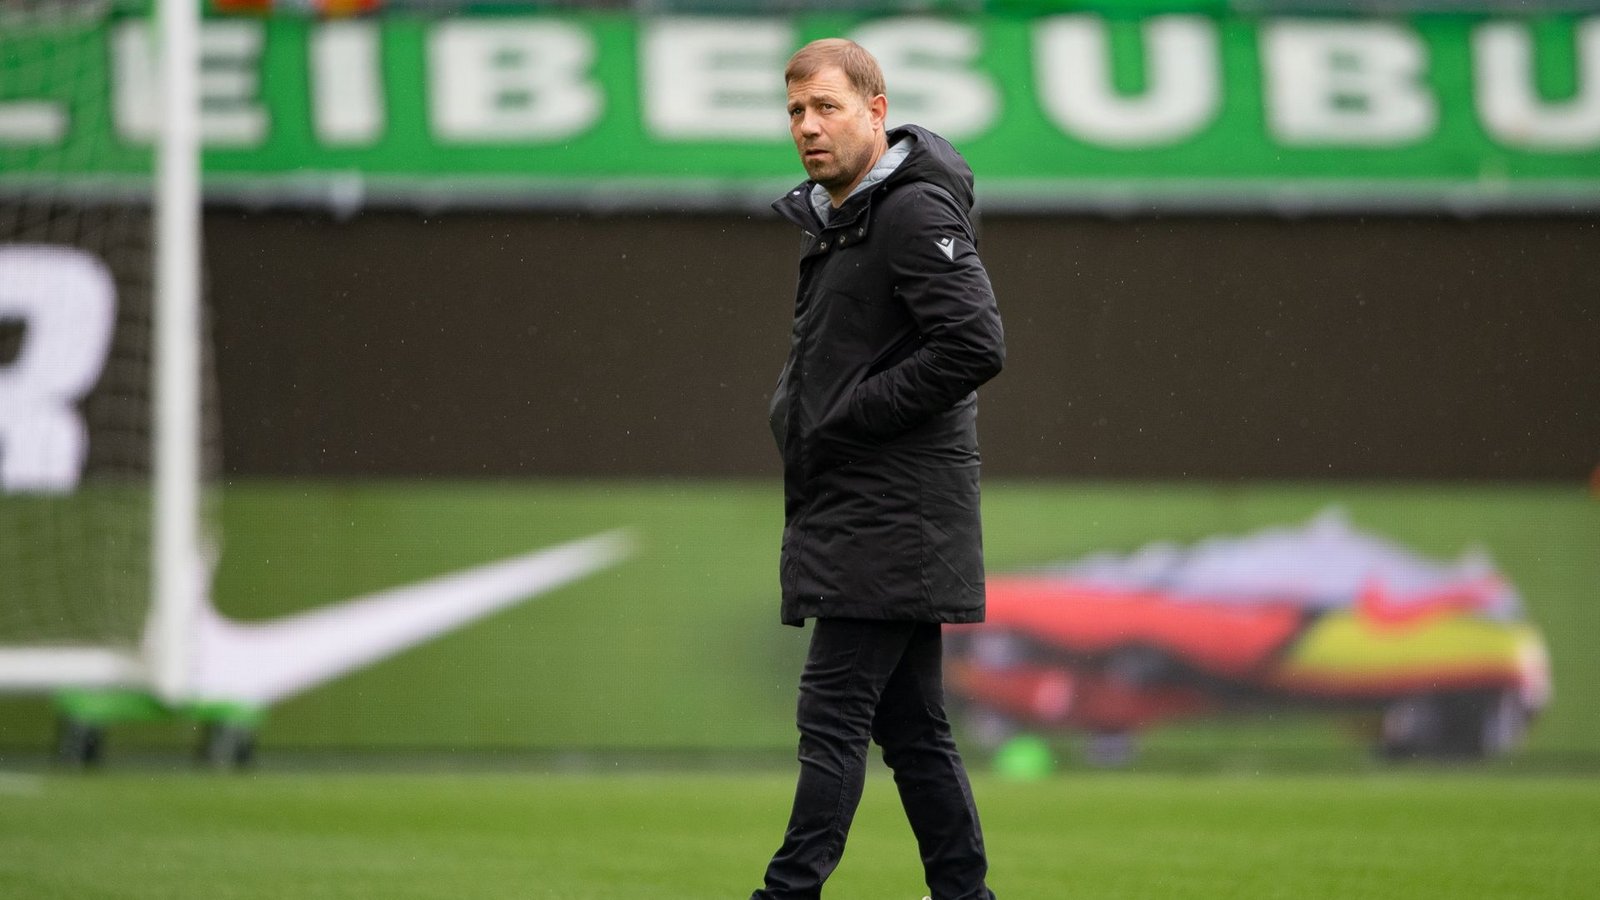 Medienberichten zufolge hat sich Arminia Bielefeld von Trainer Frank Kramer getrennt.Foto: Swen Pförtner/dpa